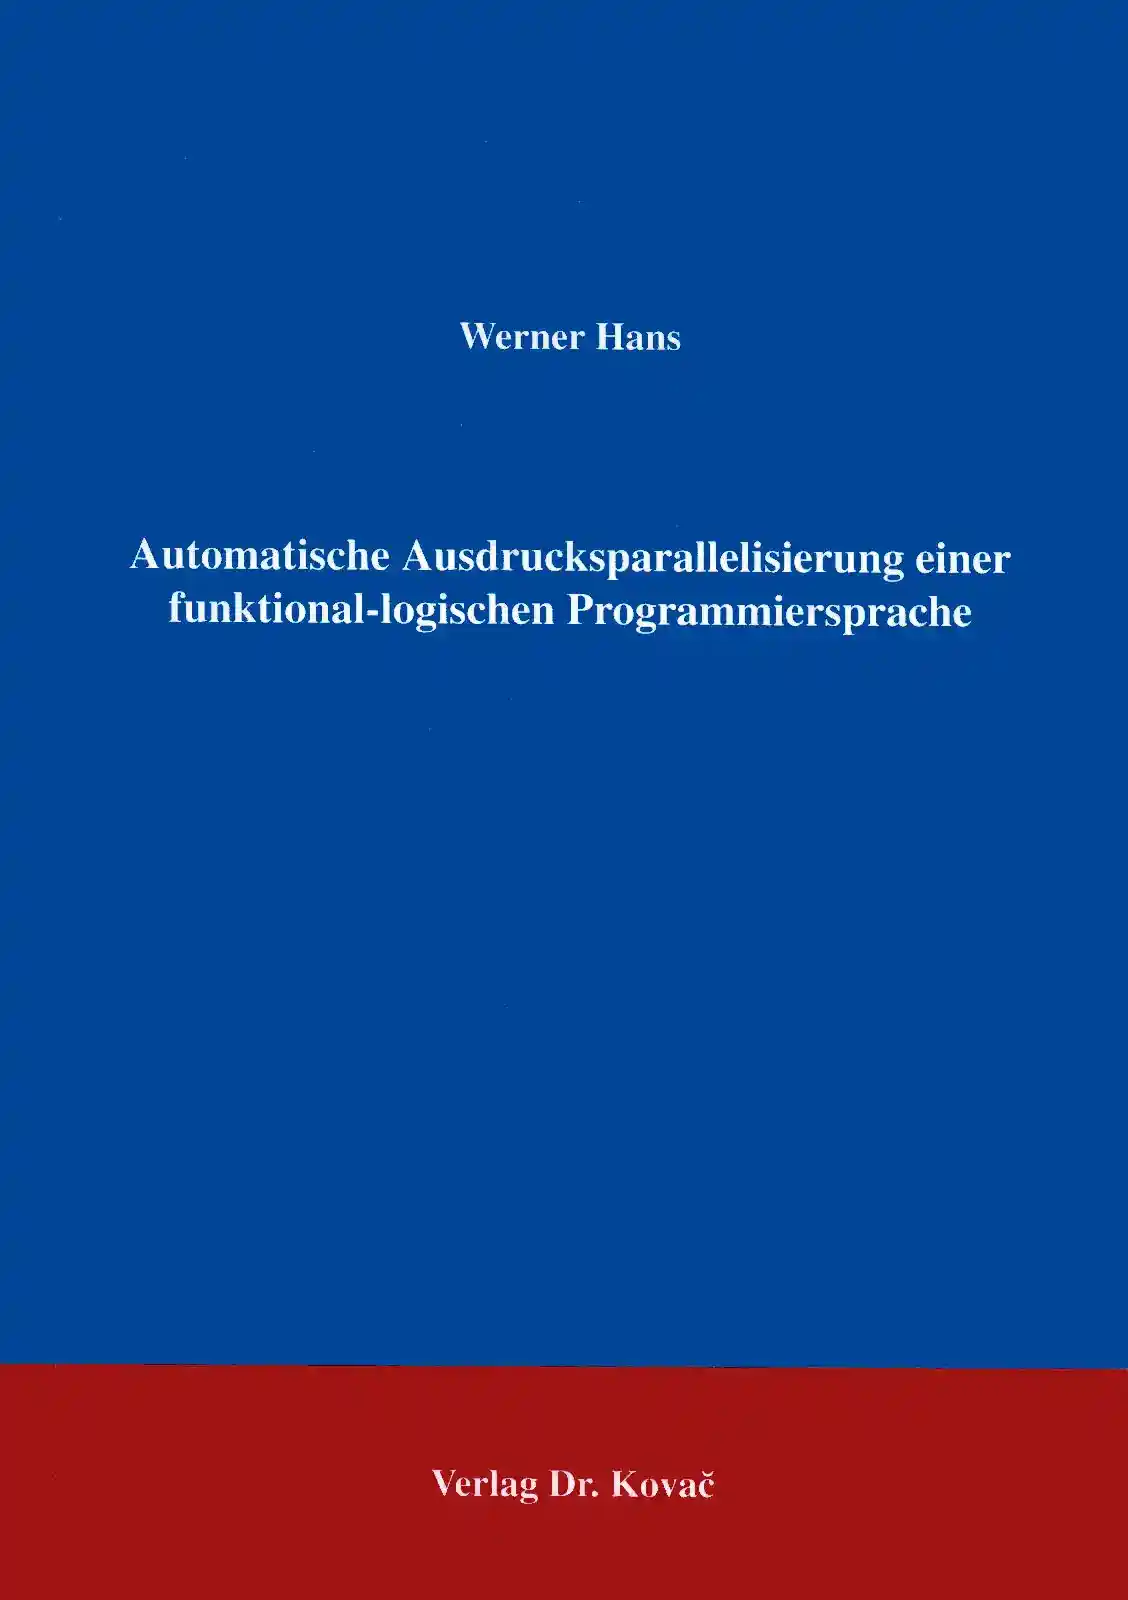 Automatische Ausdrucksparallelisierung einer funktional-logischen Programmiersprache (Forschungsarbeit)